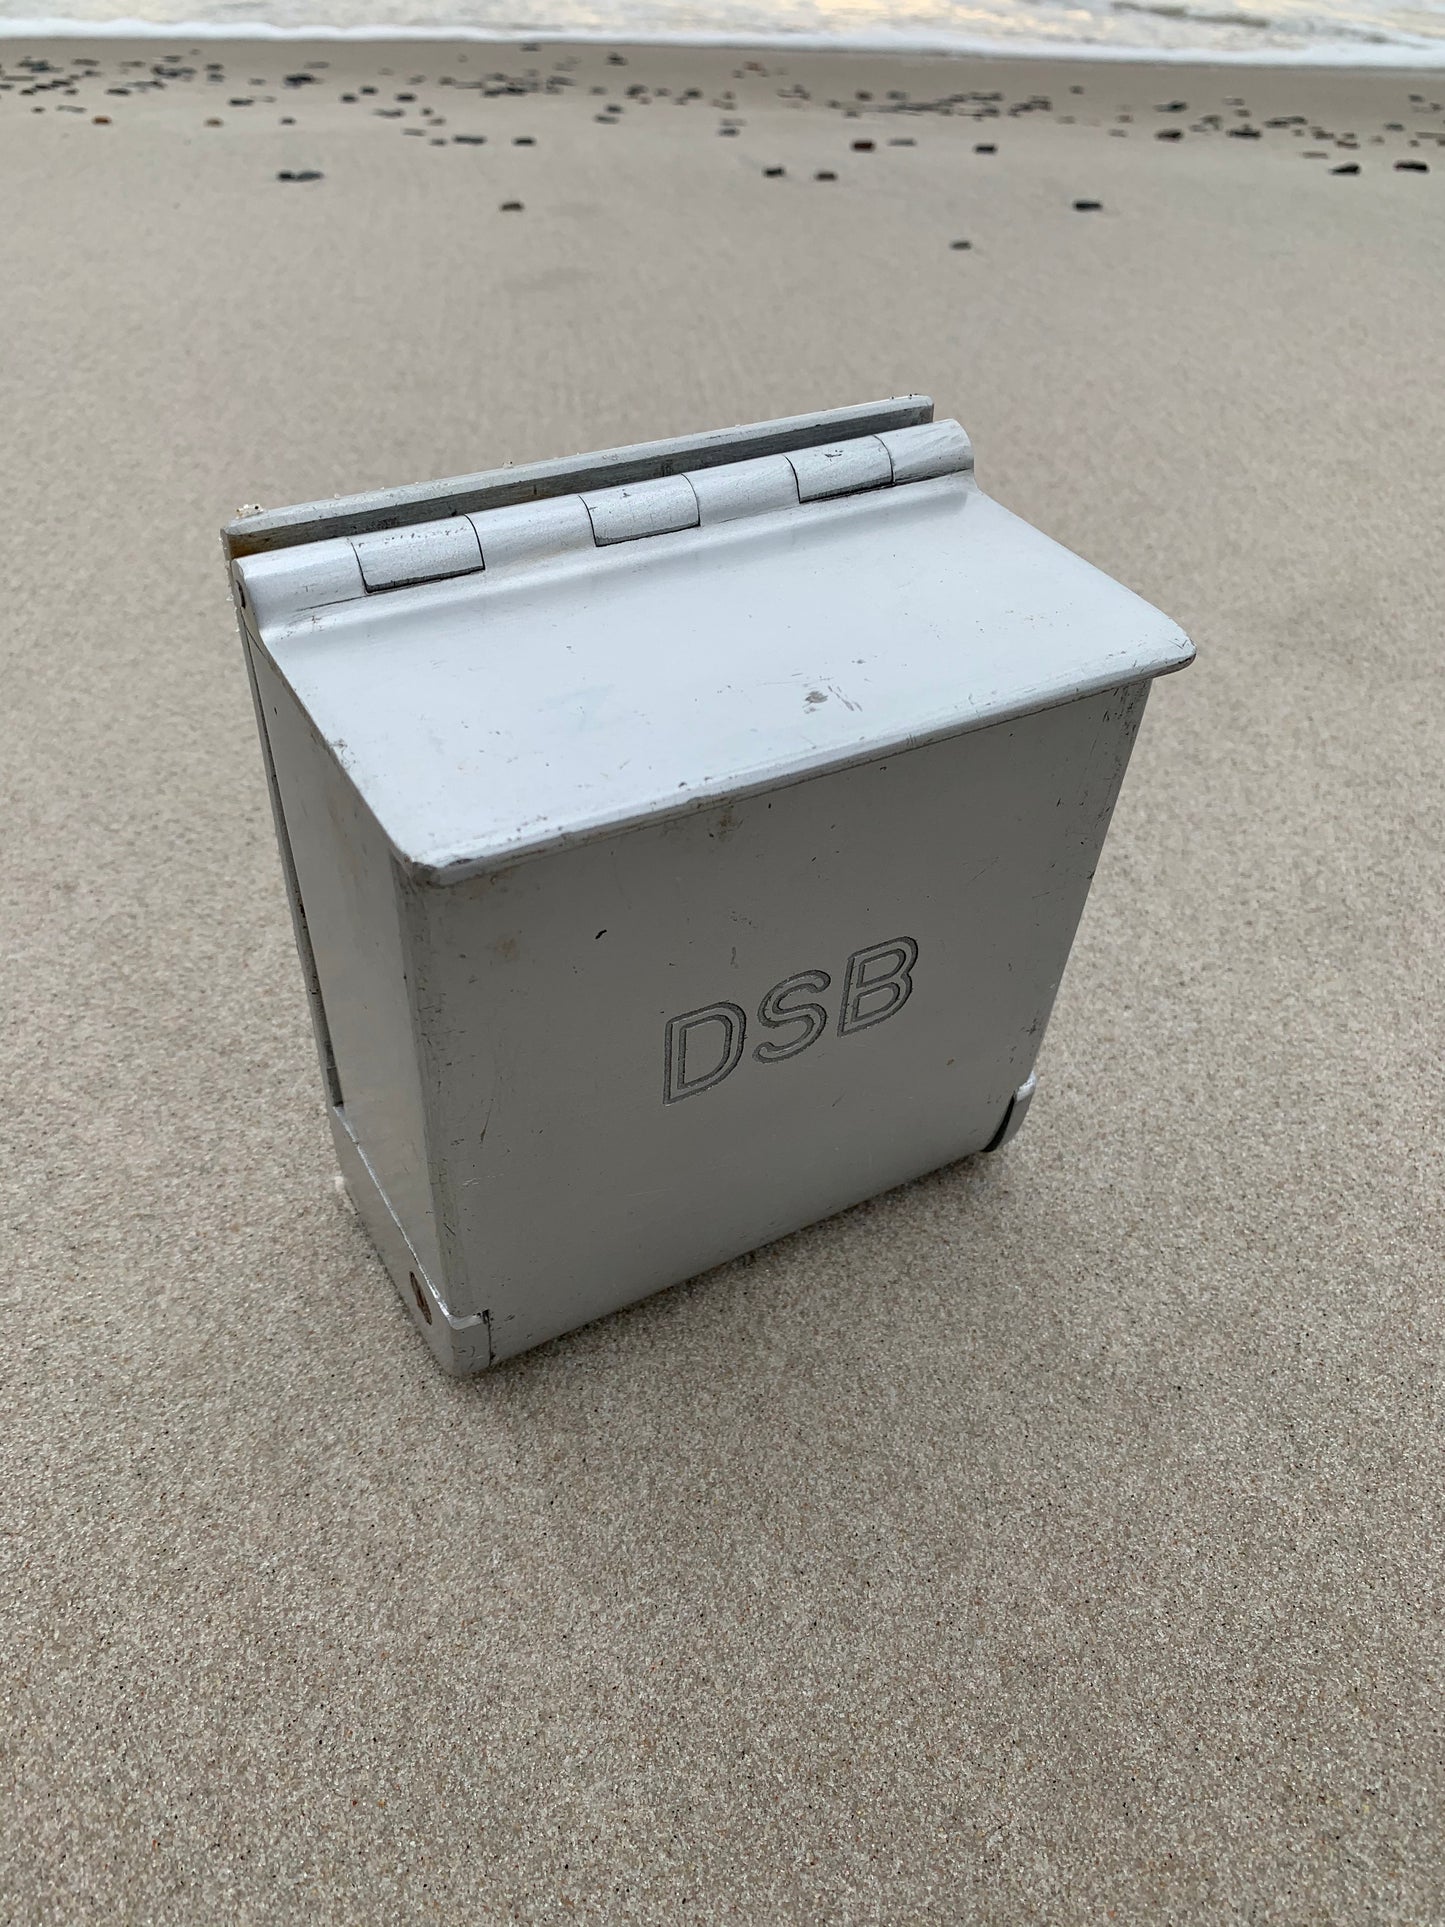 DSB Aschenbecher - Großes Modell